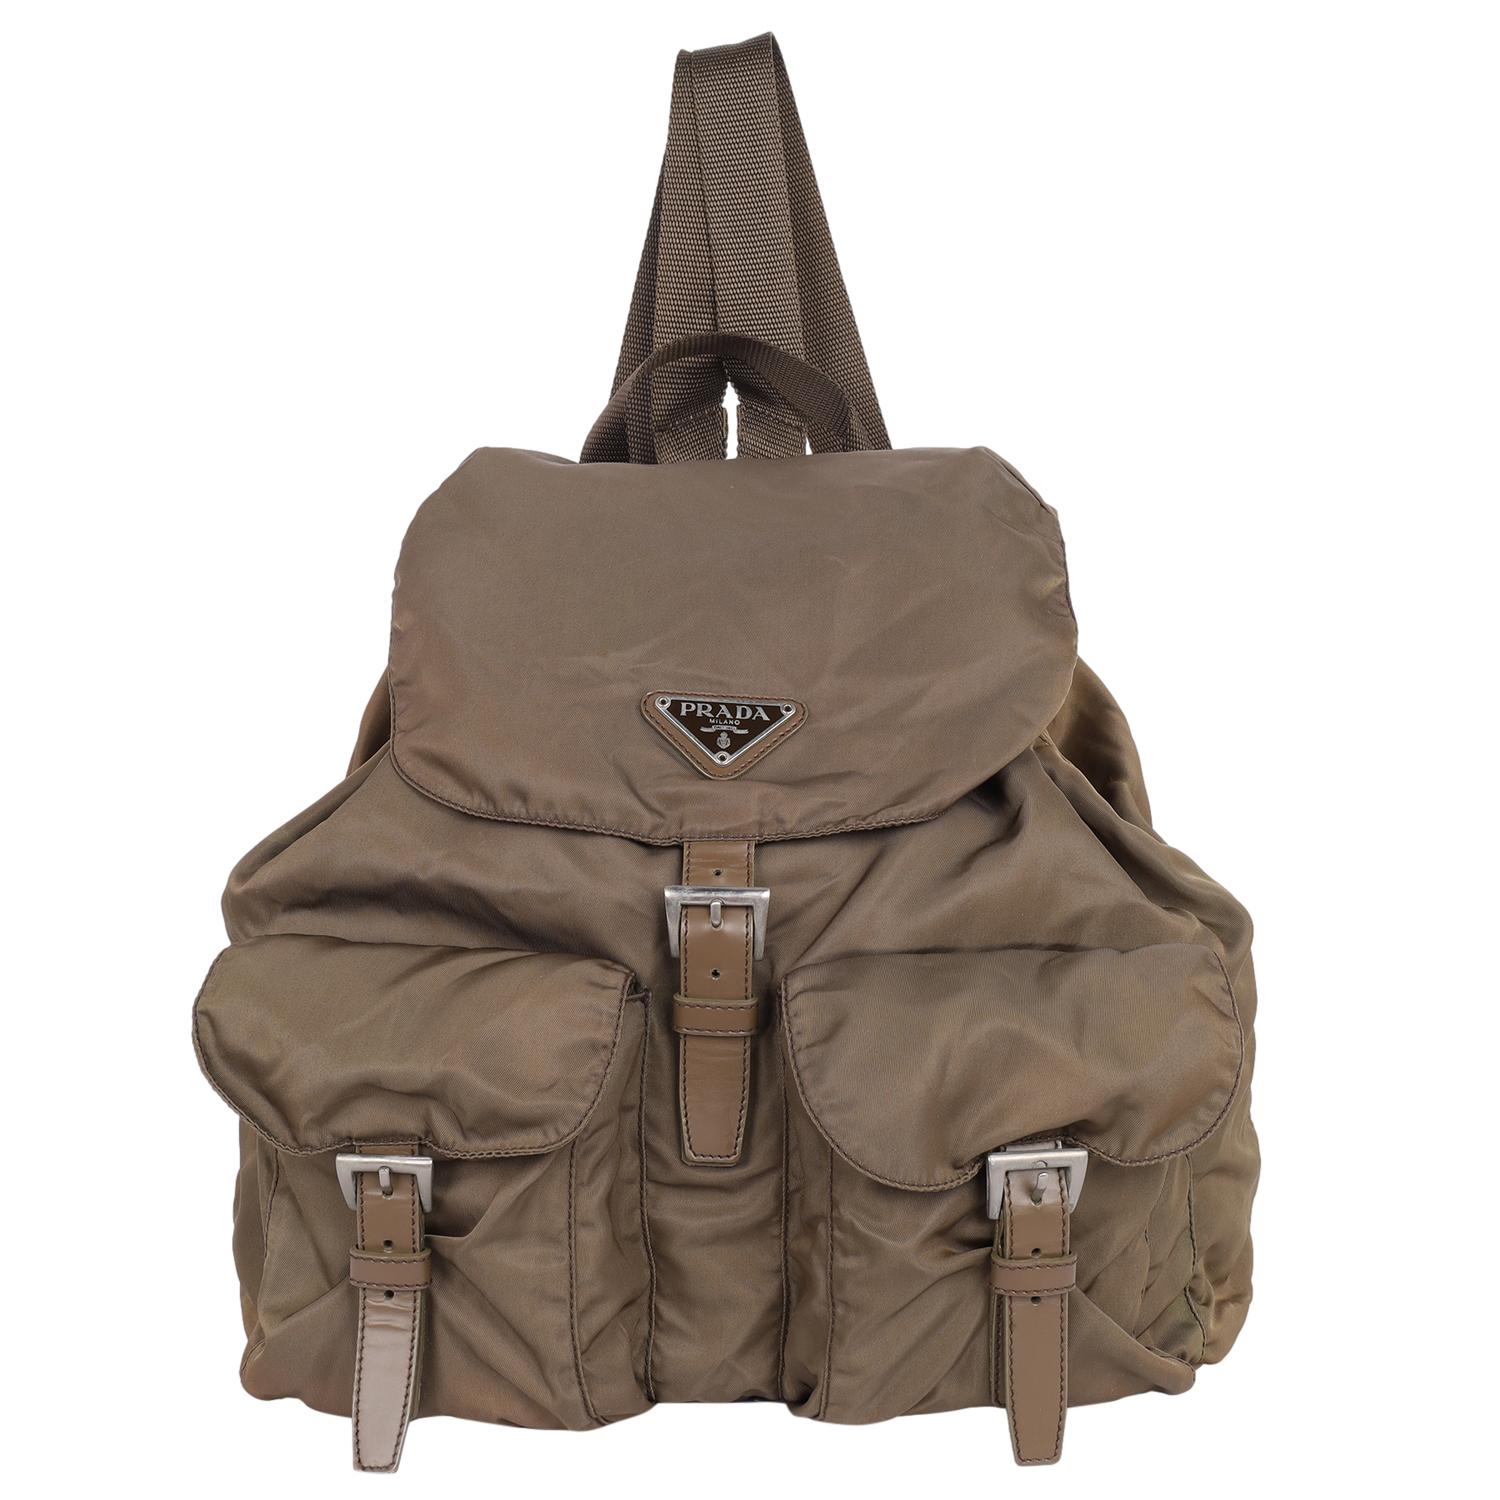 Authentique sac à dos à cordon en nylon marron Prada Tessuto. Ce sac à dos est composé d'un corps en nylon, d'un cordon de serrage et d'une fermeture à boucle, de bretelles dorsales plates, d'un cordon de serrage et de poches extérieures à